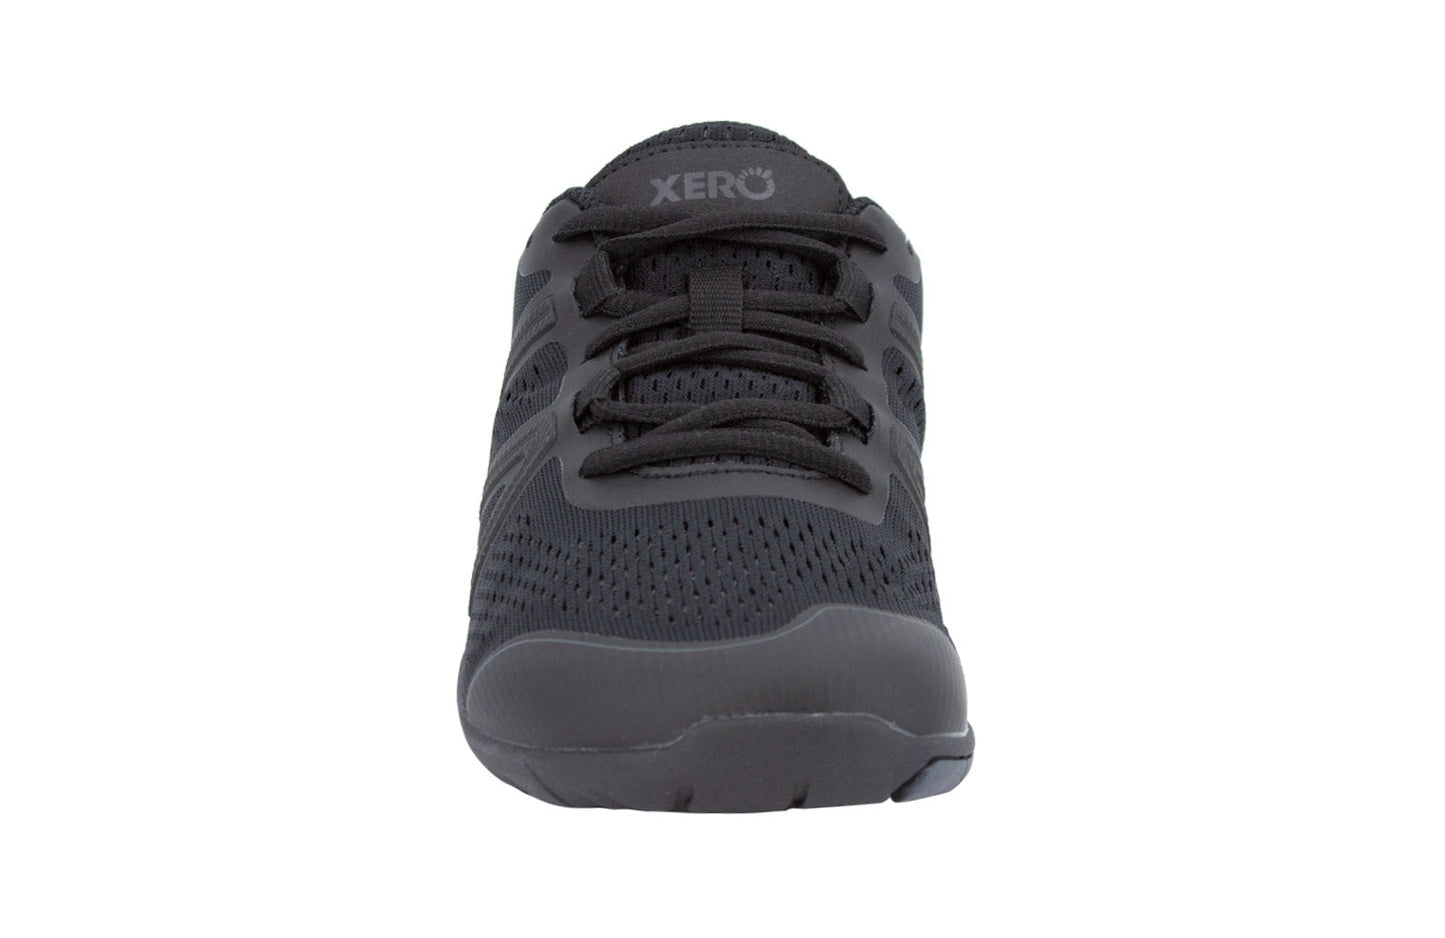 Xero Shoes HFS Womens barfods træningssko/løbesko til kvinder i farven black, forfra